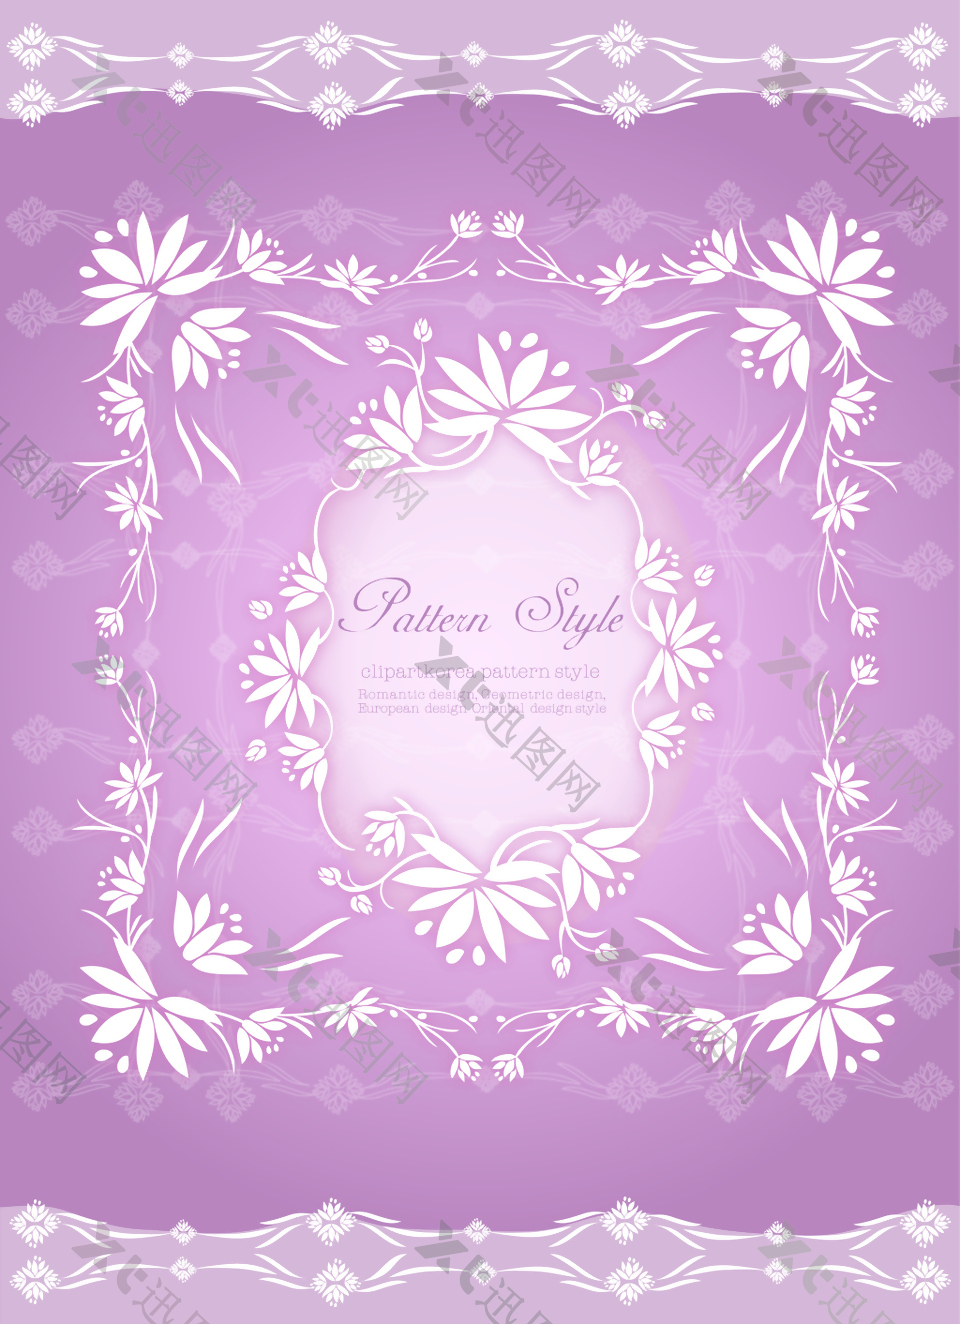 紫色古典花纹